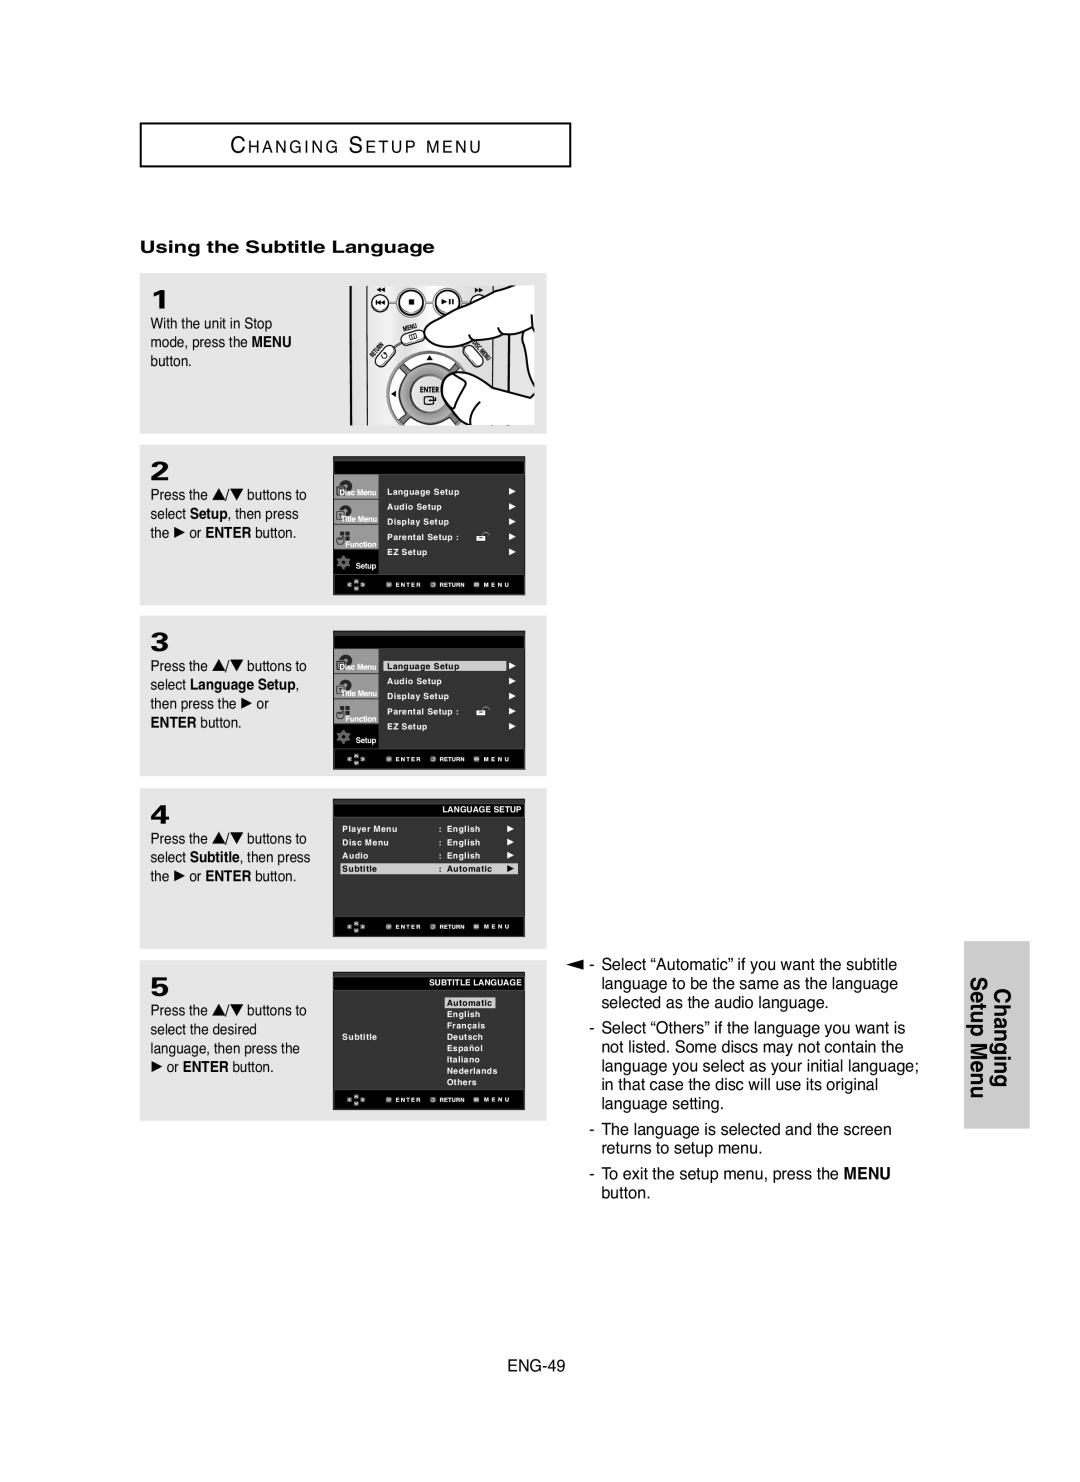 Samsung DVD-HD755 manual Changing Setup Menu, C H A N G I N G Se T U P M E N U, Using the Subtitle Language, ENG-49 